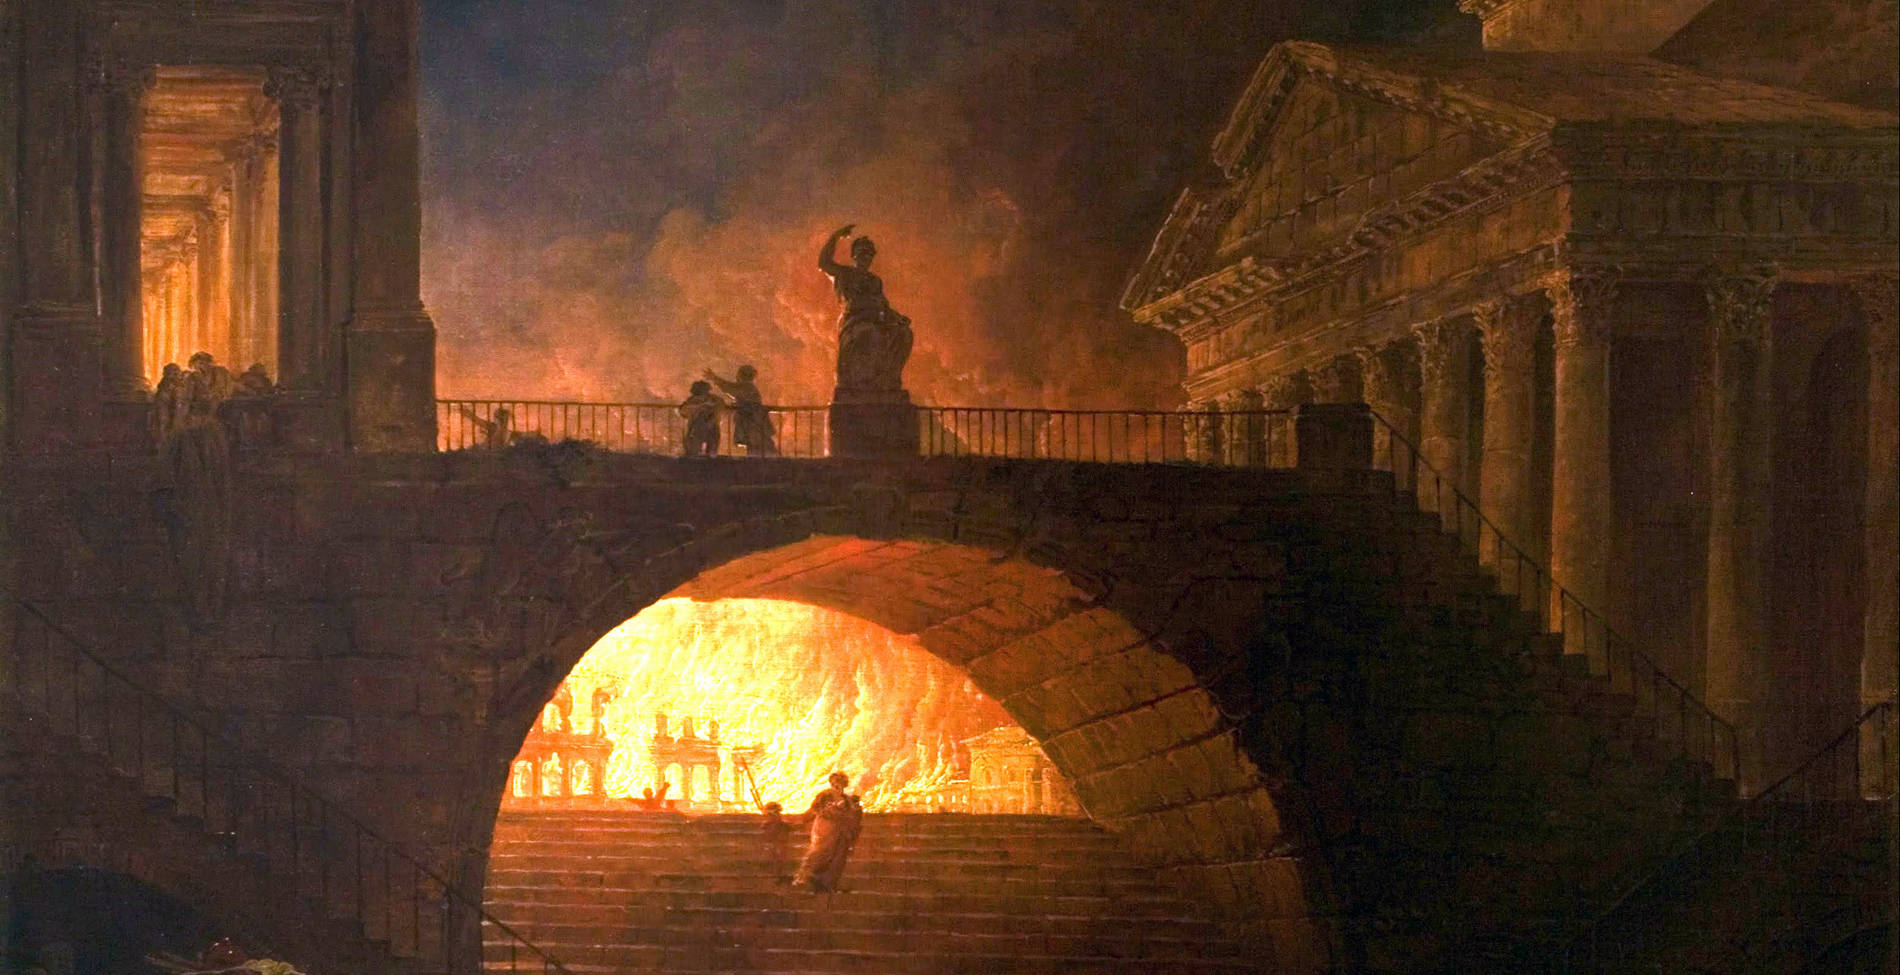 Έκαψε πράγματι ο Νέρωνας τη Ρώμη για να κατηγορήσει τους χριστιανούς;